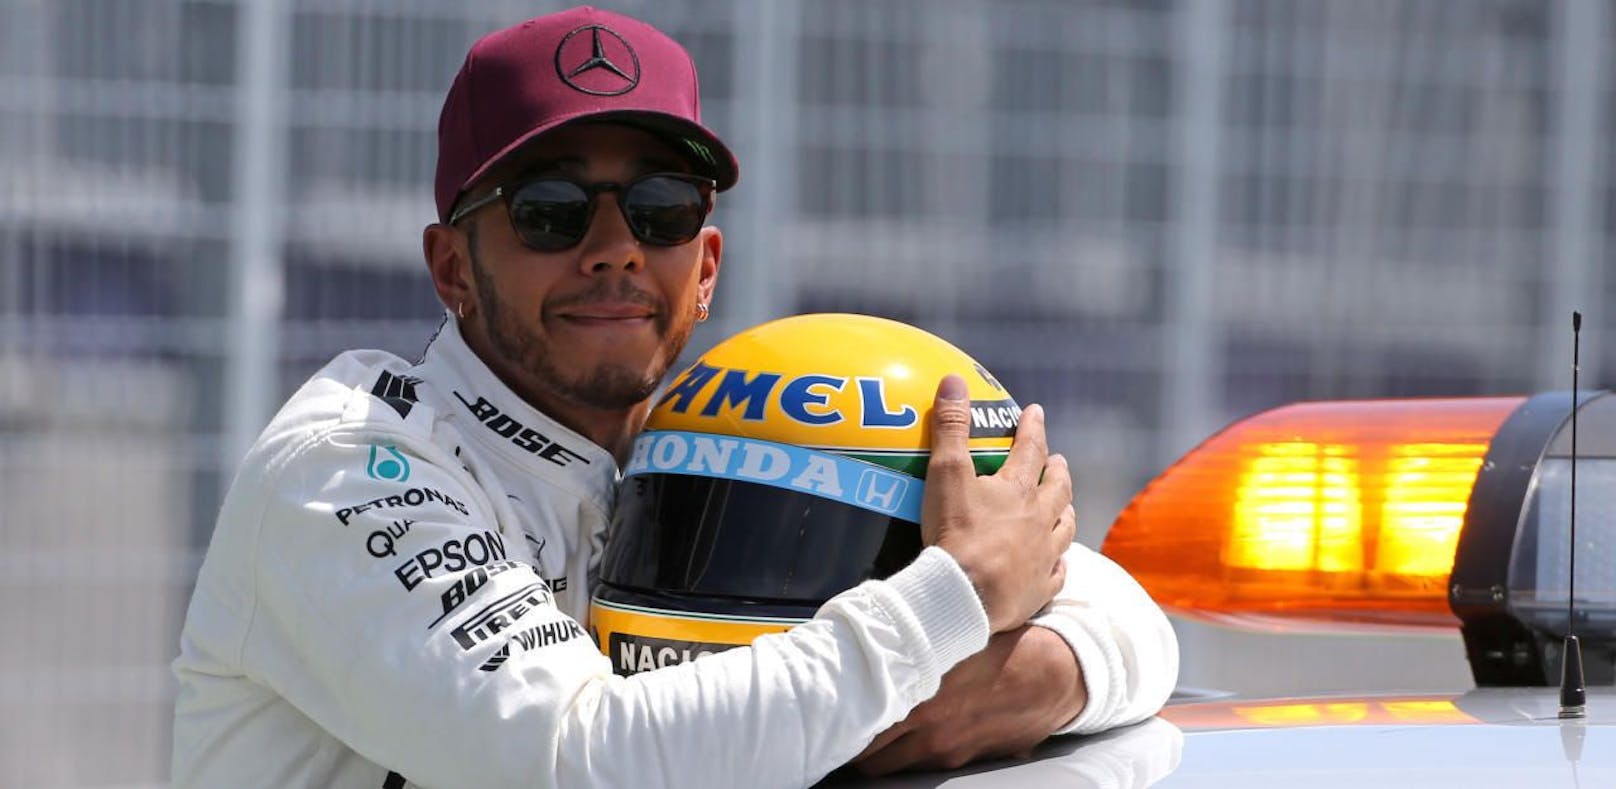 Cooles Geschenk: Senna-Helm für Lewis Hamilton